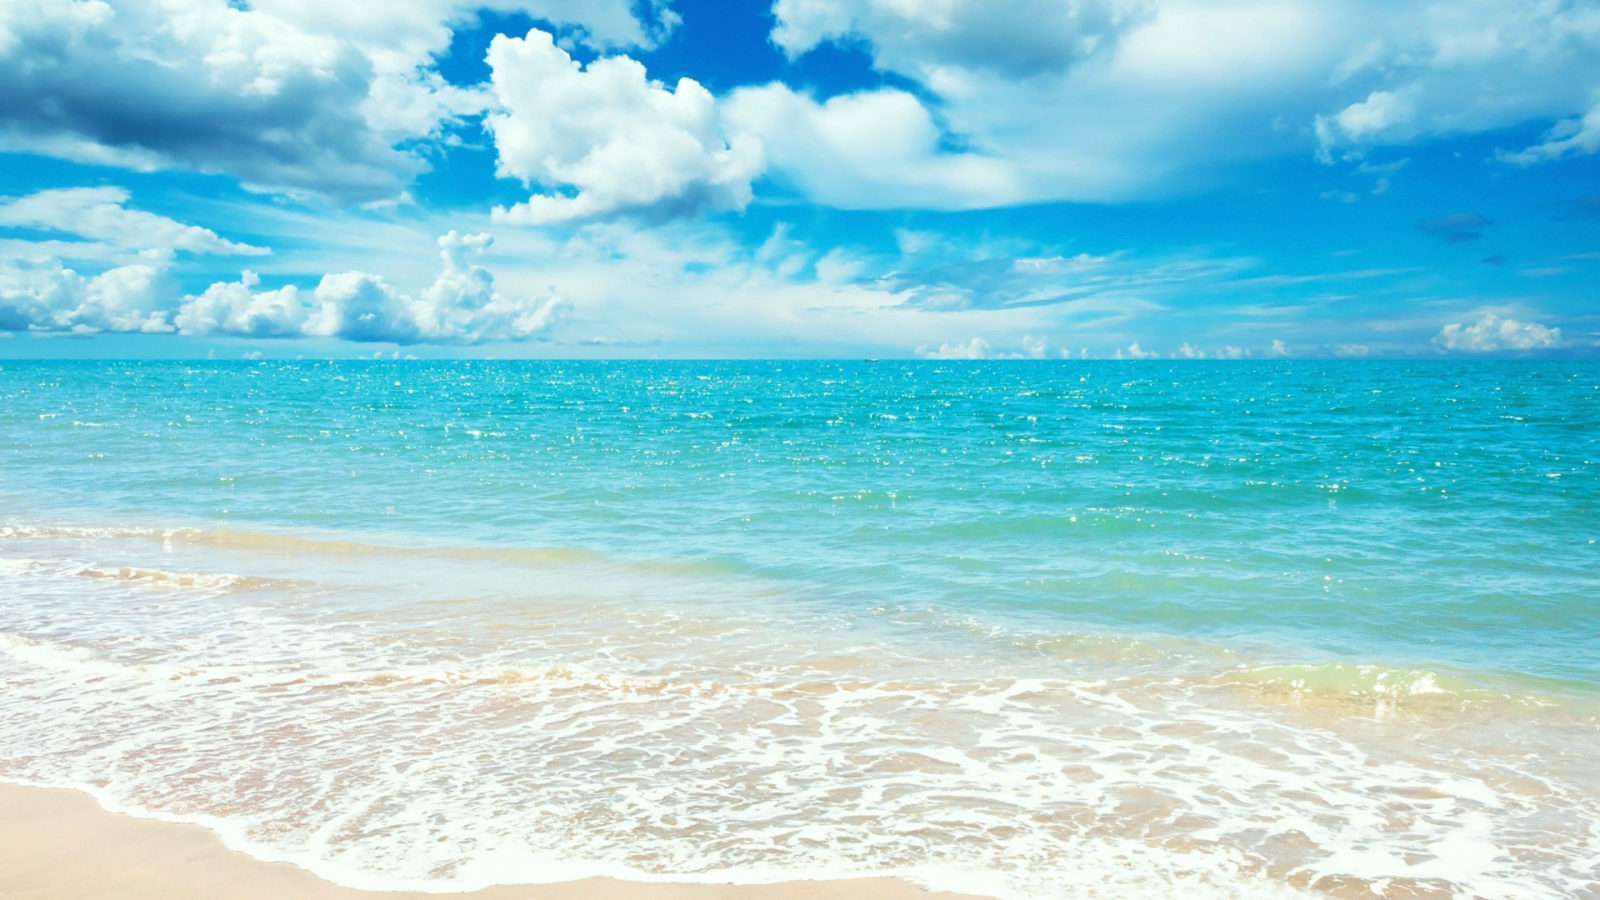 Hình nền bãi biển: Một bức ảnh nền bãi biển tuyệt đẹp sẽ mang đến cho bạn cảm giác thoải mái và thư giãn đến tuyệt vời. Không chỉ là hình ảnh đẹp mắt, mà còn khiến bạn tưởng tượng đến những kỳ nghỉ tuyệt vời trên bãi biển với gia đình và bạn bè.